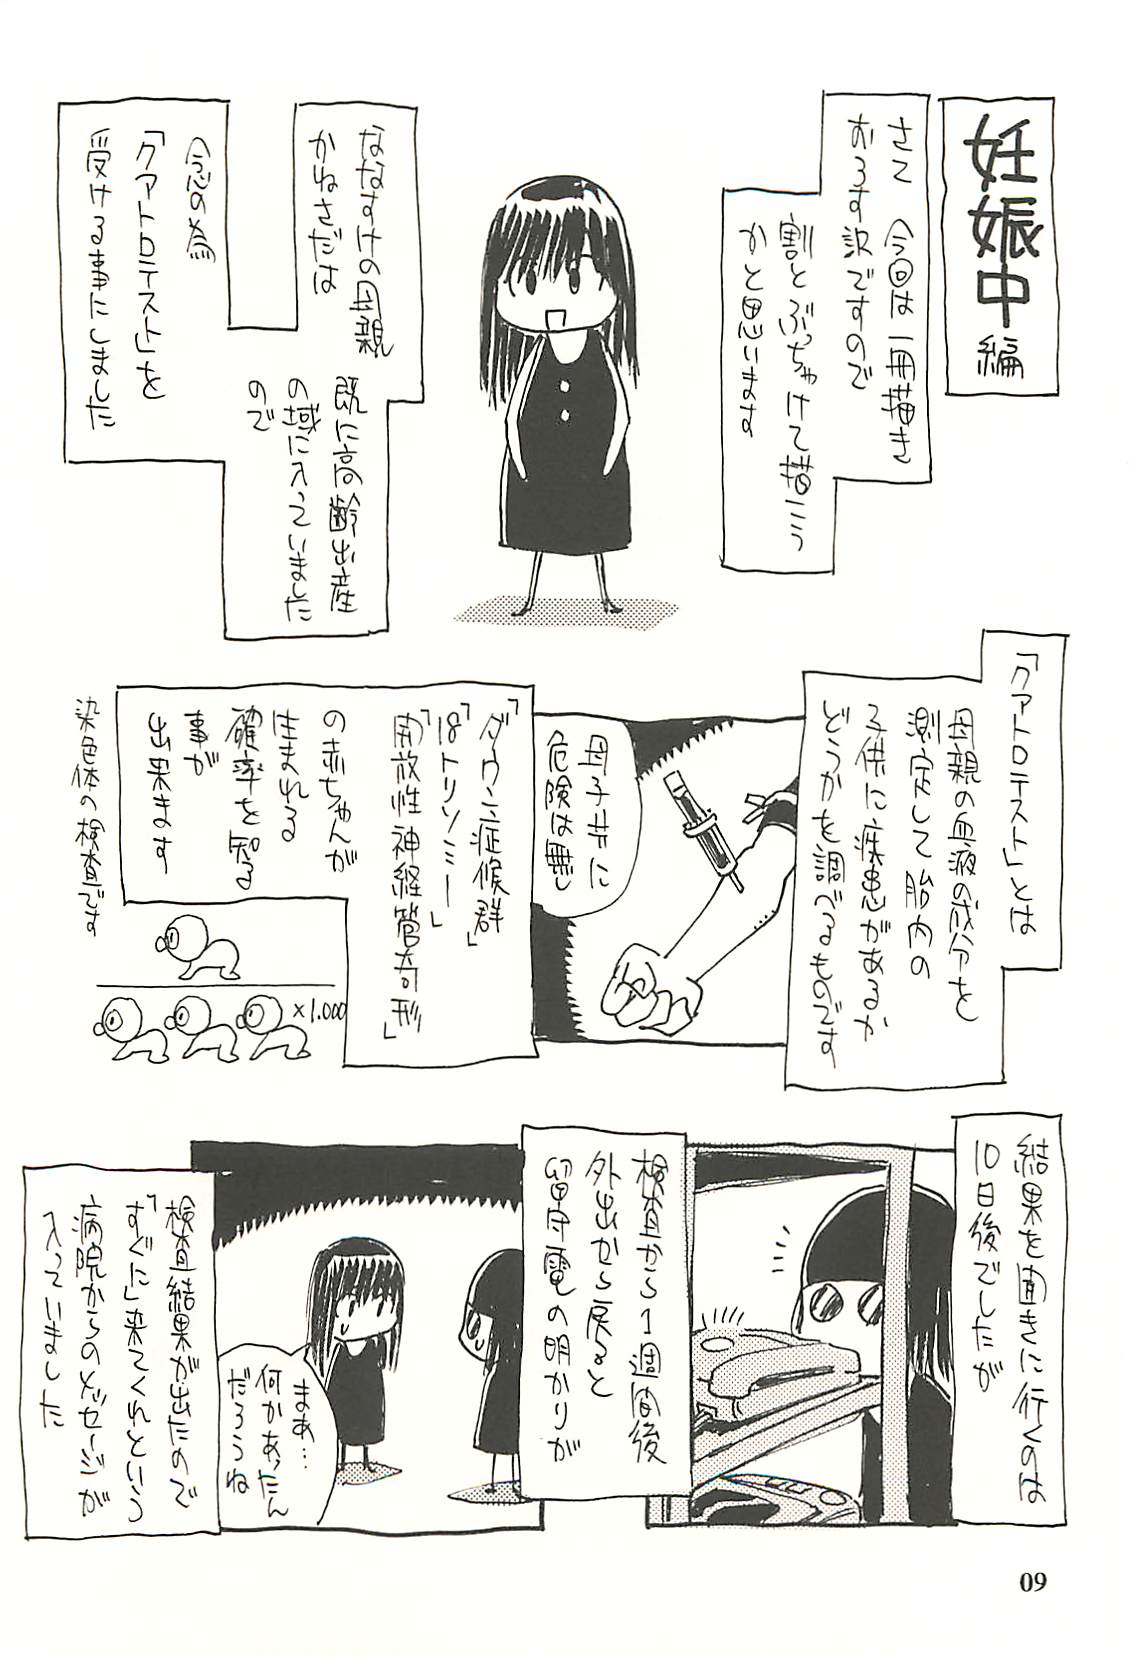 [NOUZUI MAJUTSU, NO-NO'S (Kanesada Keishi, Kawara Keisuke)] Nouzui Kawaraban Hinichijoutekina Shussan [脳髄魔術, NO-NO'S (兼処敬士, 瓦敬助)] 脳髄瓦版 非日常的な出産